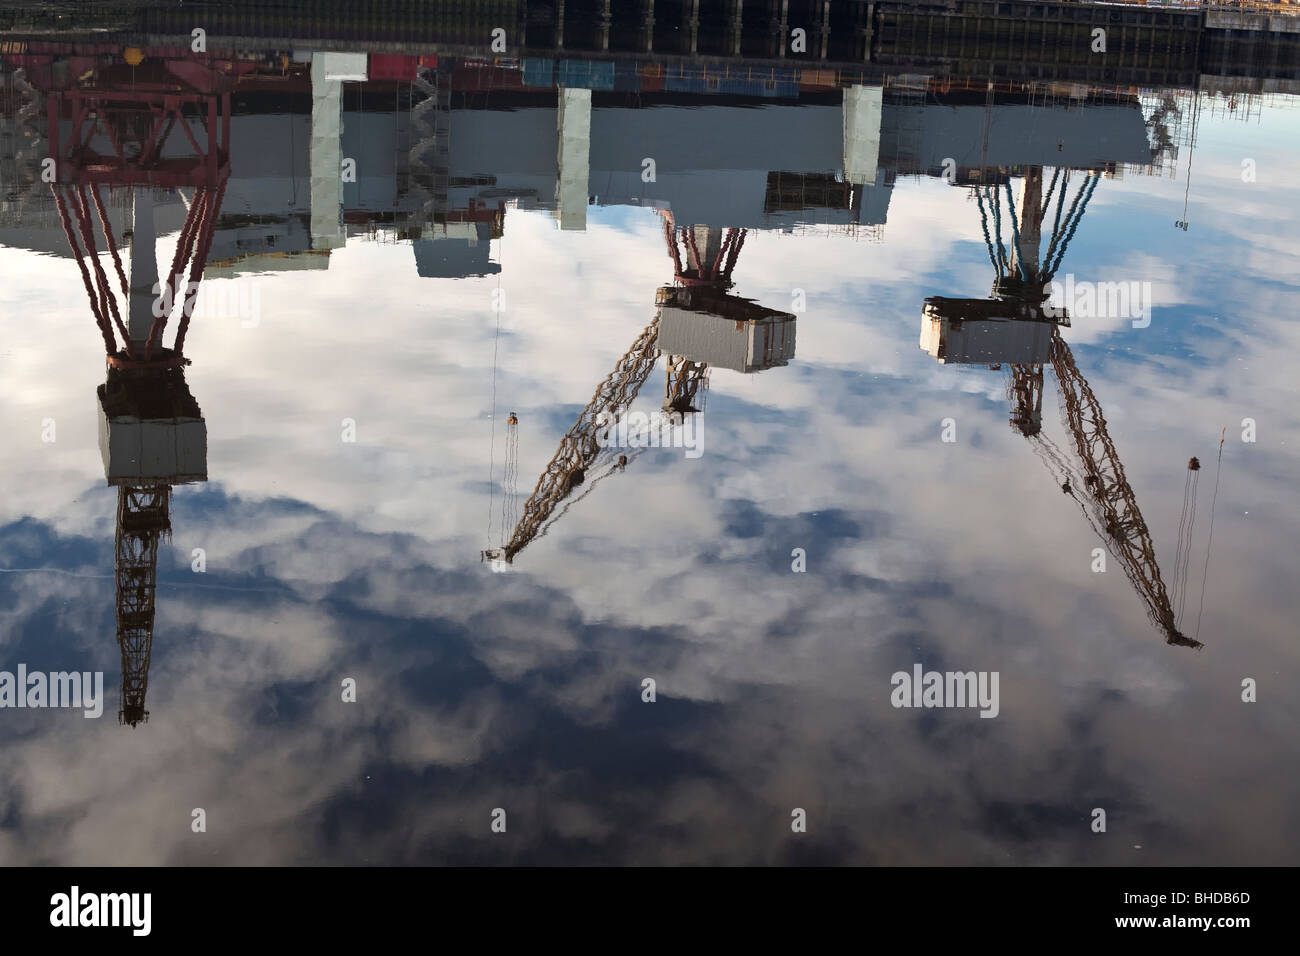 Le levage lourd ship yard cranes reflétée dans la rivière Clyde, Glasgow, Ecosse. Banque D'Images